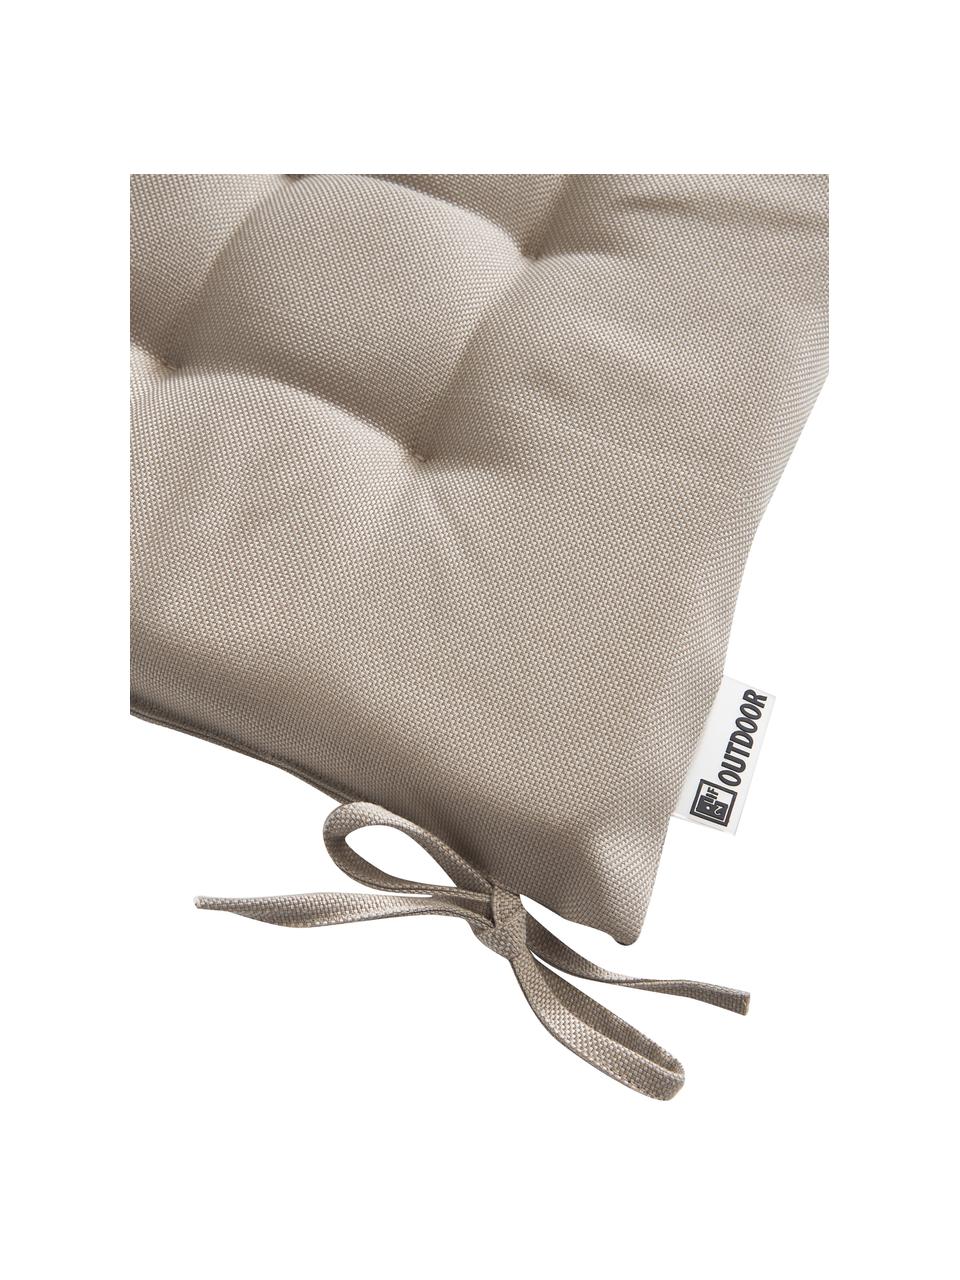 Zewnętrzna poduszka siedziska na krzesło Olef, 100% bawełna, Beżowy, S 40 x D 40 cm